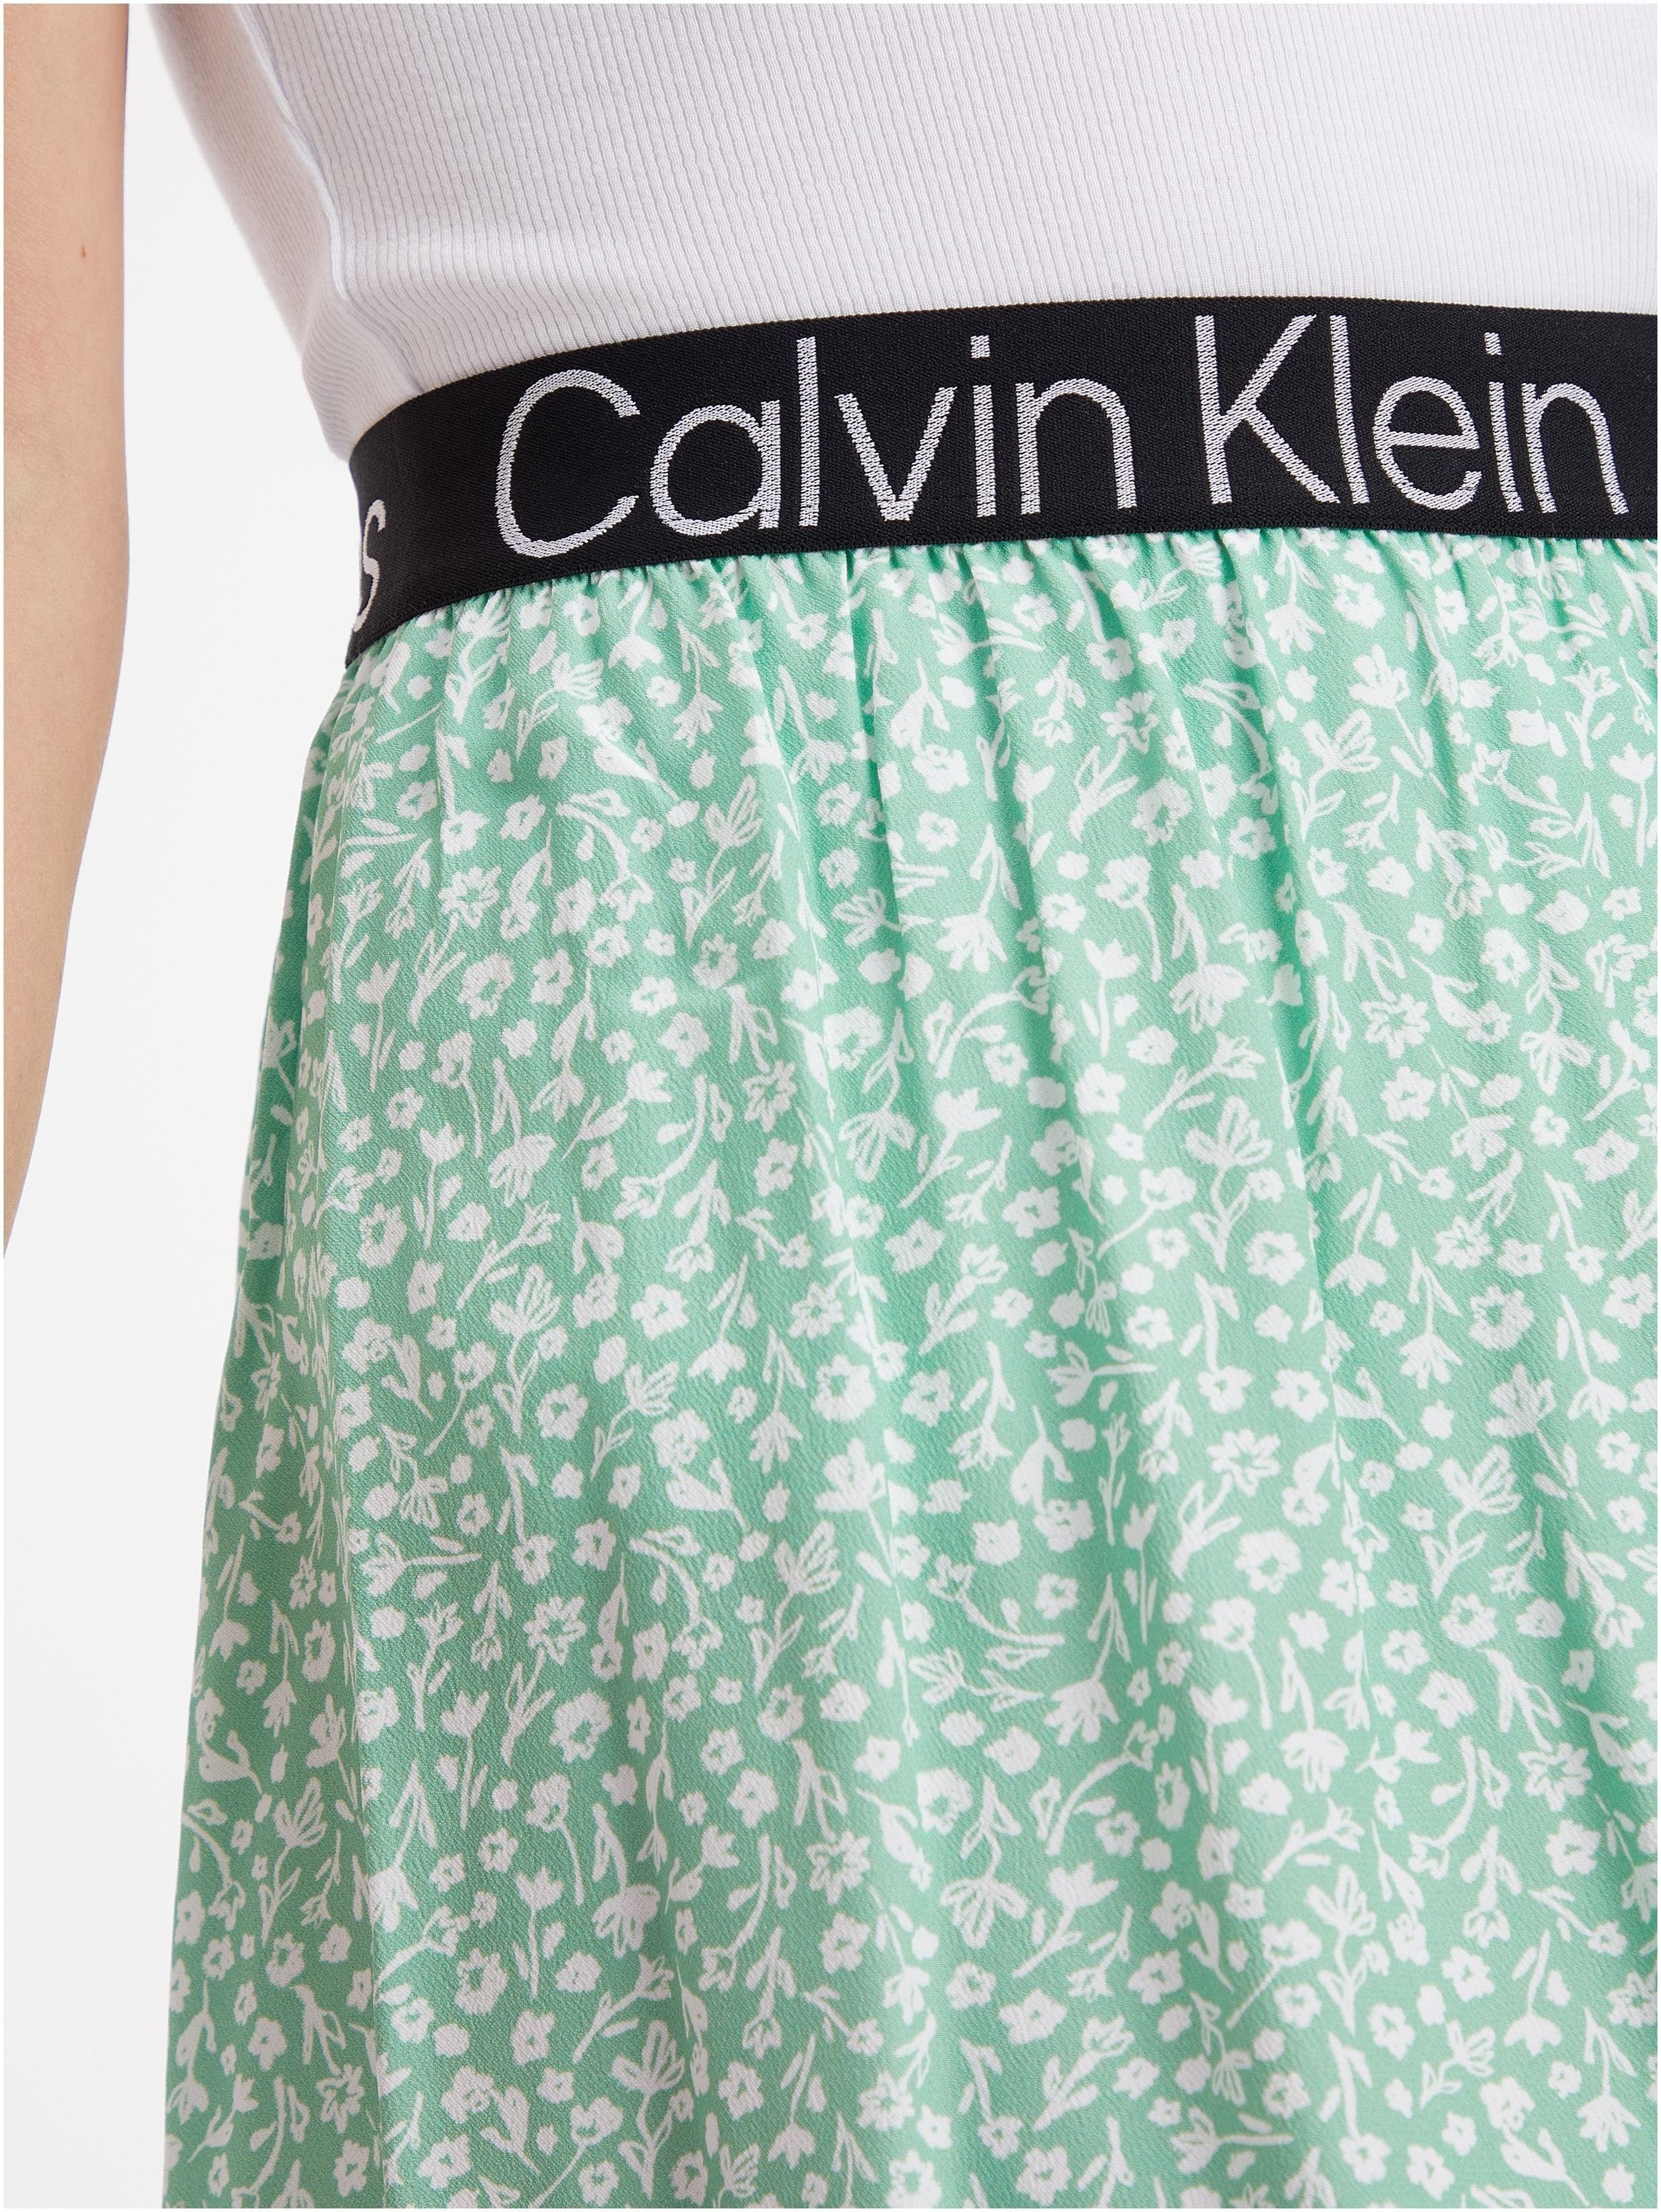 weiß elastischem Jeans-Bund Jeans Minirock hellgrün, Klein Calvin mit Klein Calvin